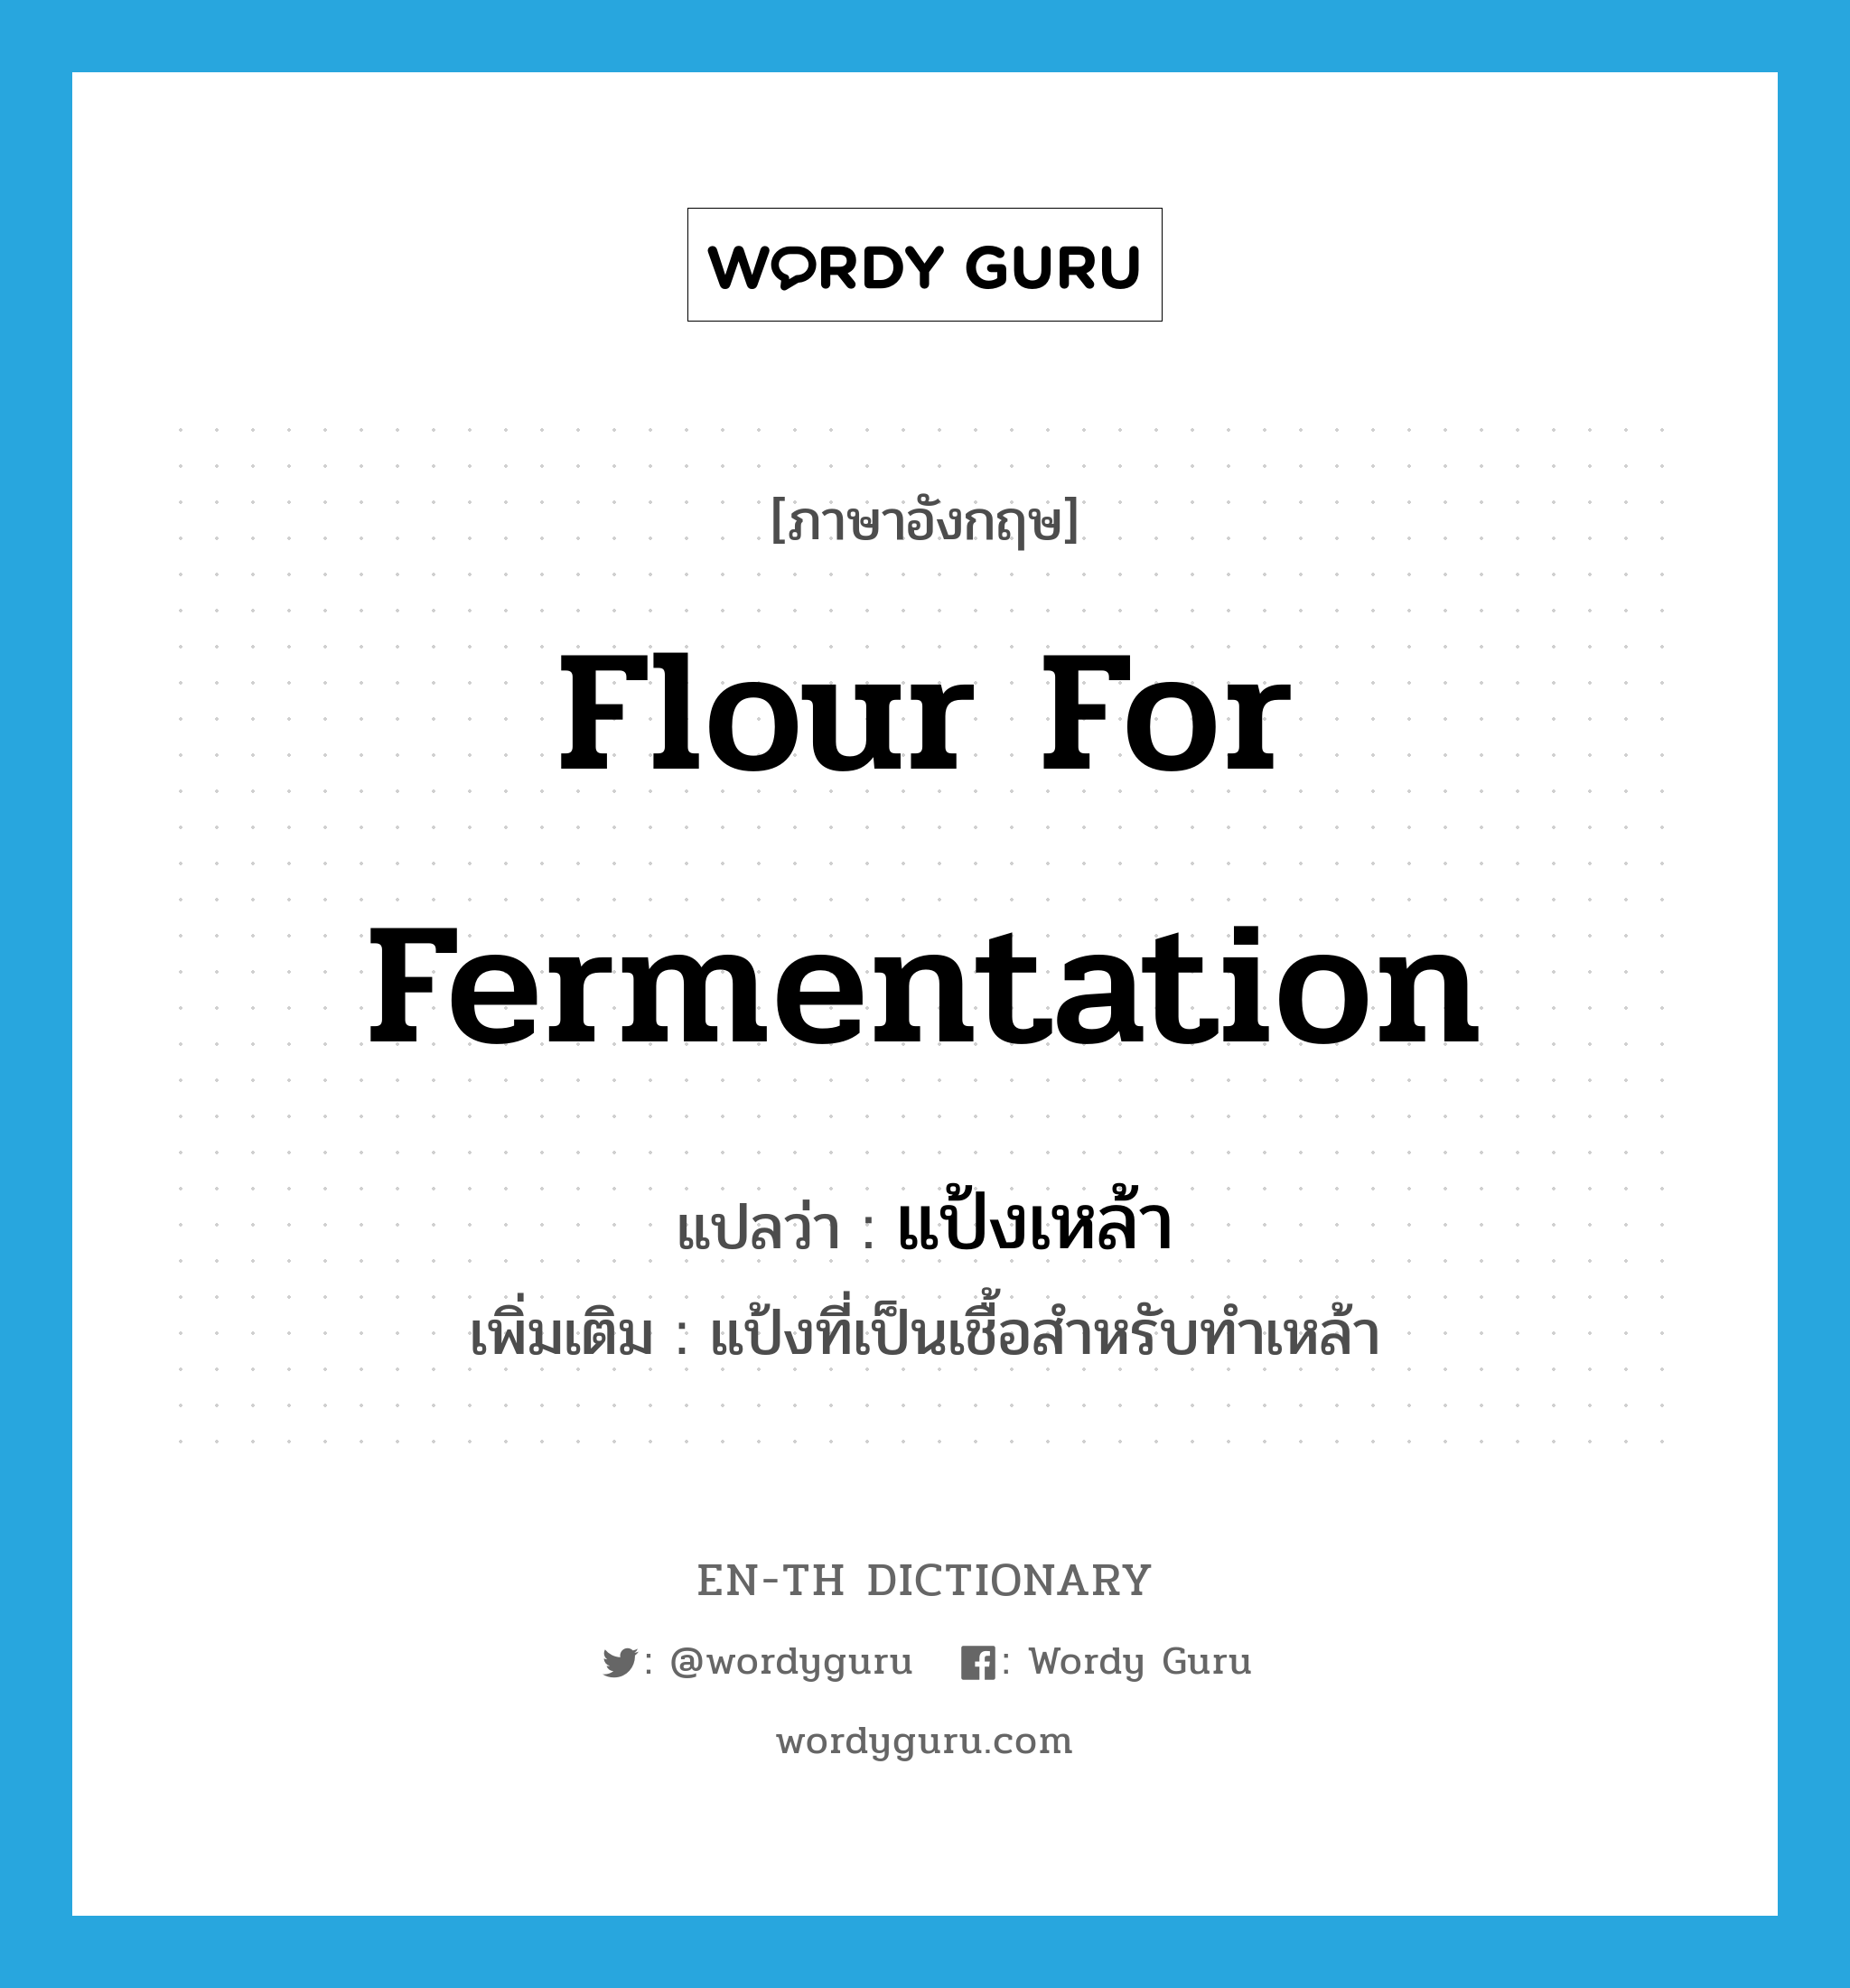 แป้งเหล้า ภาษาอังกฤษ?, คำศัพท์ภาษาอังกฤษ แป้งเหล้า แปลว่า flour for fermentation ประเภท N เพิ่มเติม แป้งที่เป็นเชื้อสำหรับทำเหล้า หมวด N